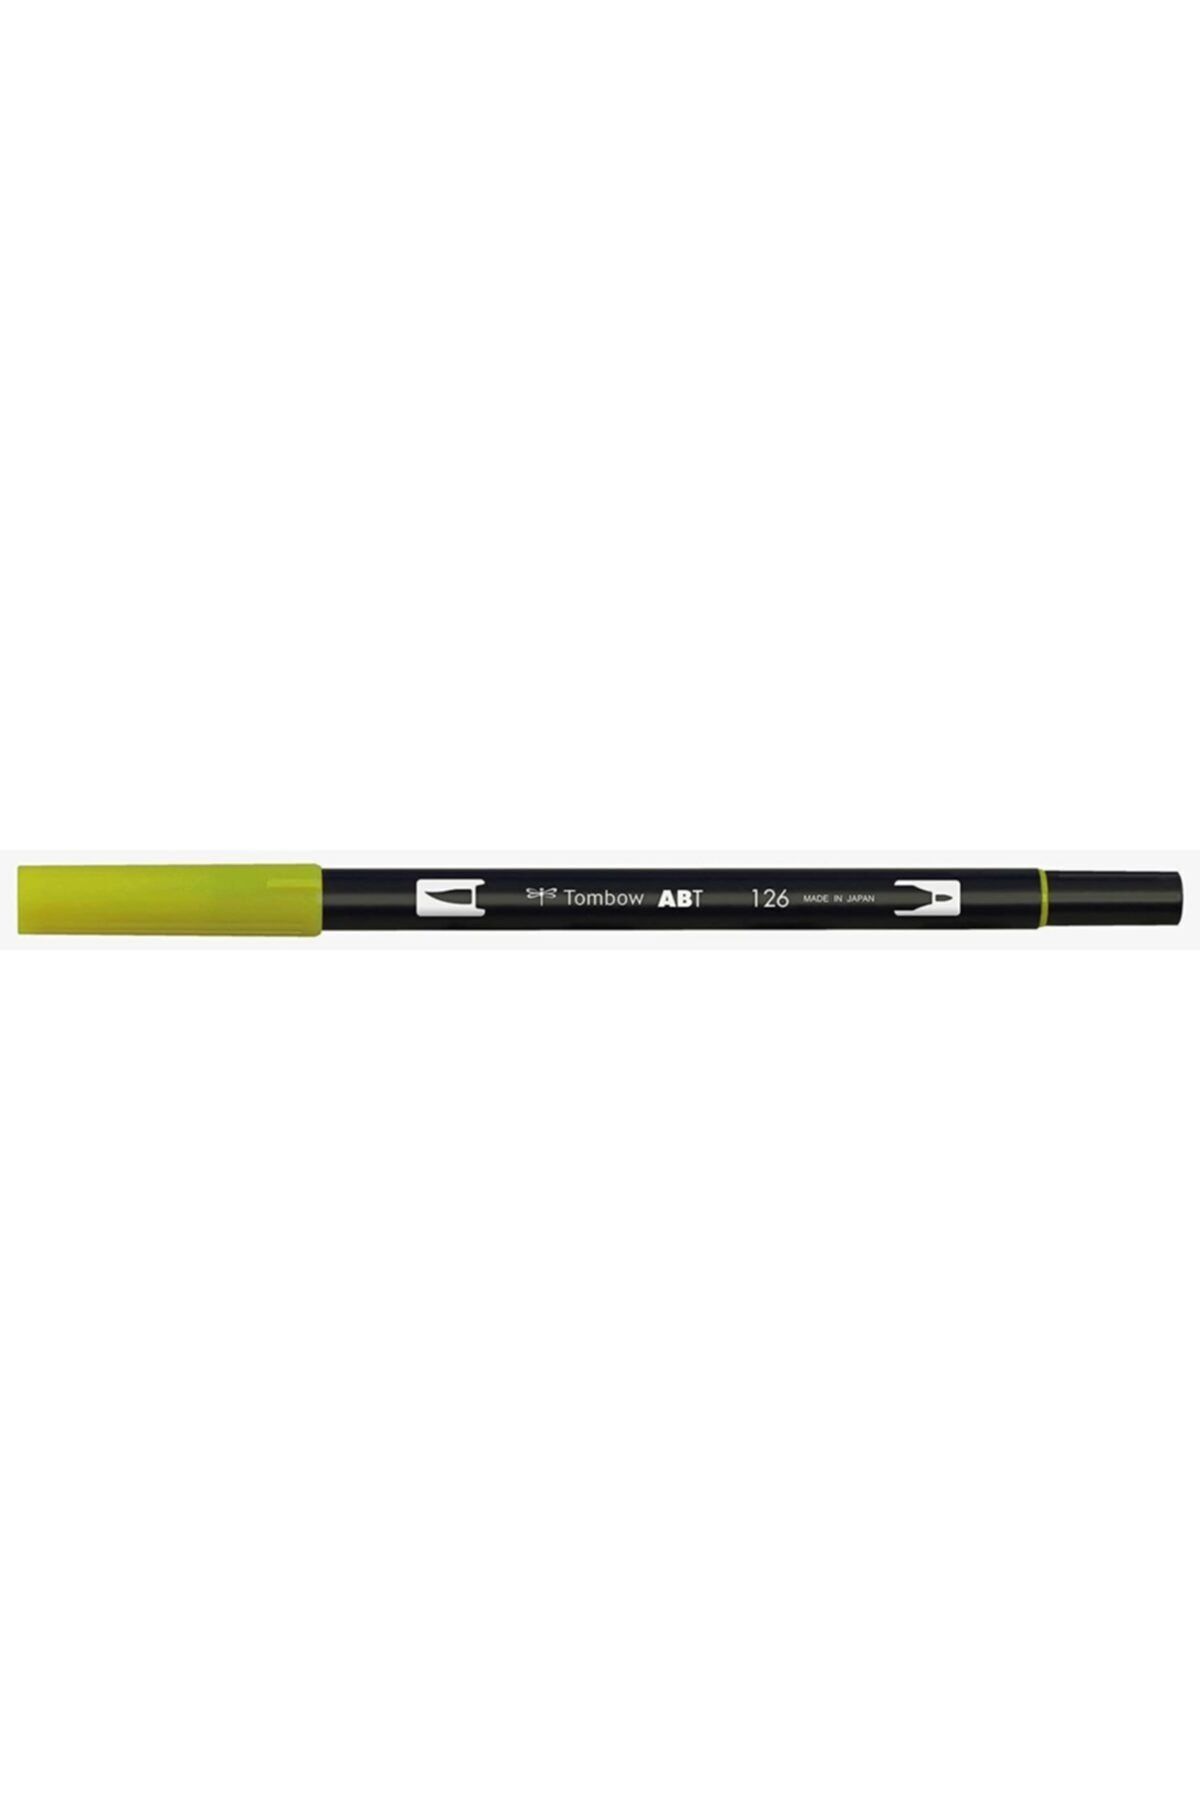 Tombow Ab-t Dual Brush Pen - Light Olive- 126